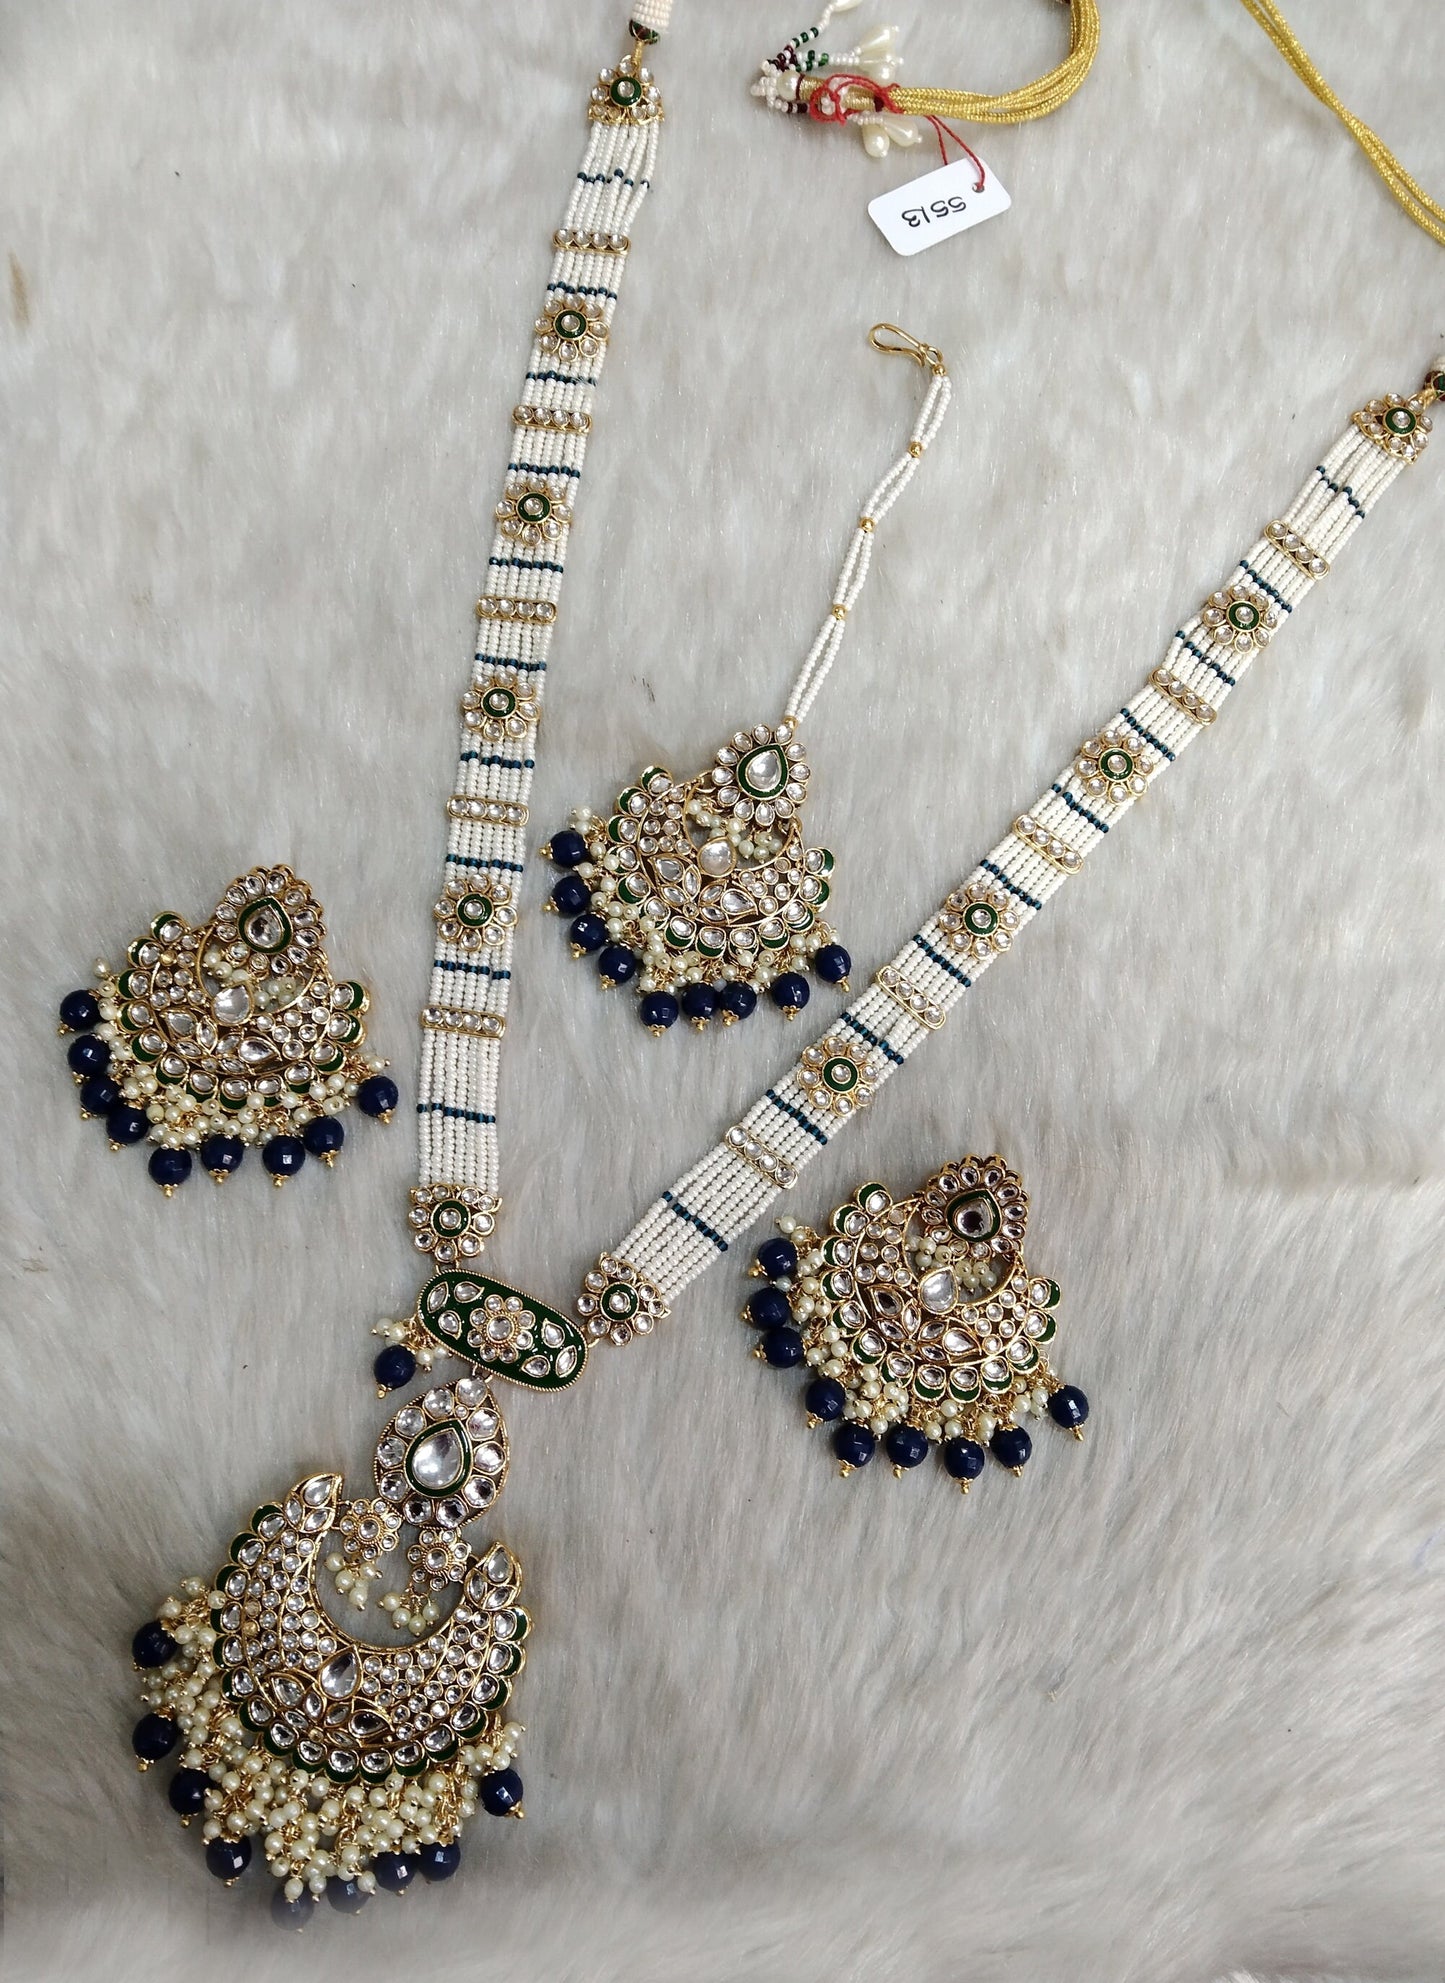 Rani Haar Kundan lange Halskette Set/Gold weiß, Kastanienbraun, Grün, Blau Indische Halskette Set/Indischer Kundan Hobart Schmuck/Muslimische lange Halskette Set